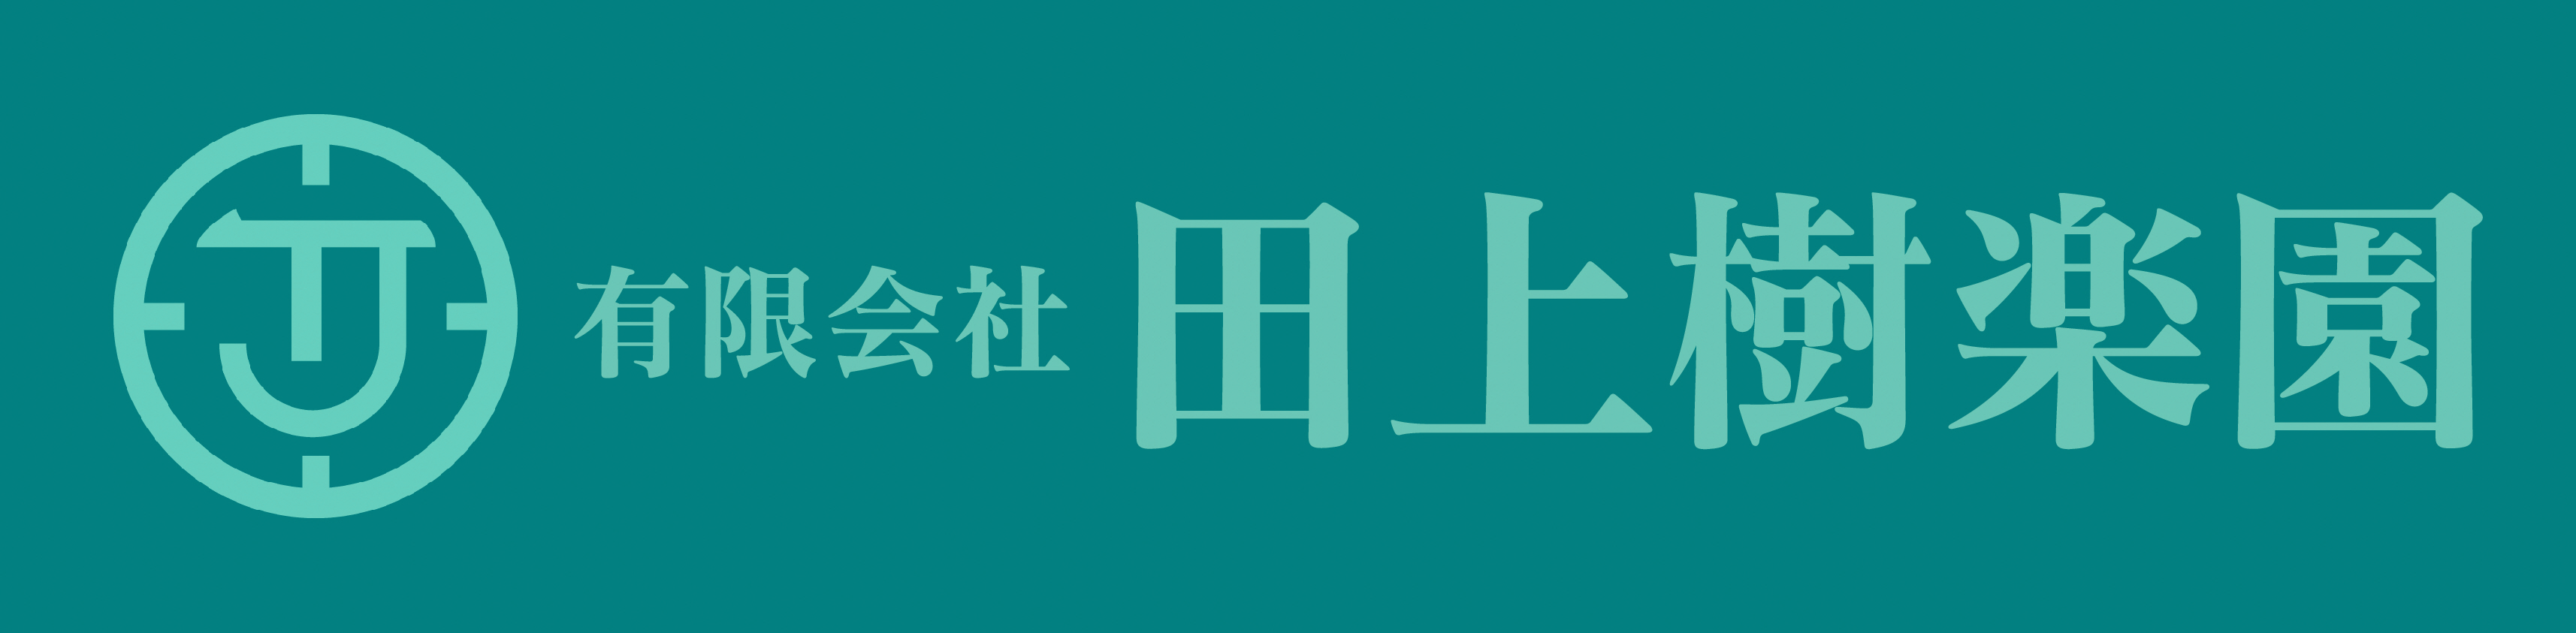 田上樹楽園ロゴ